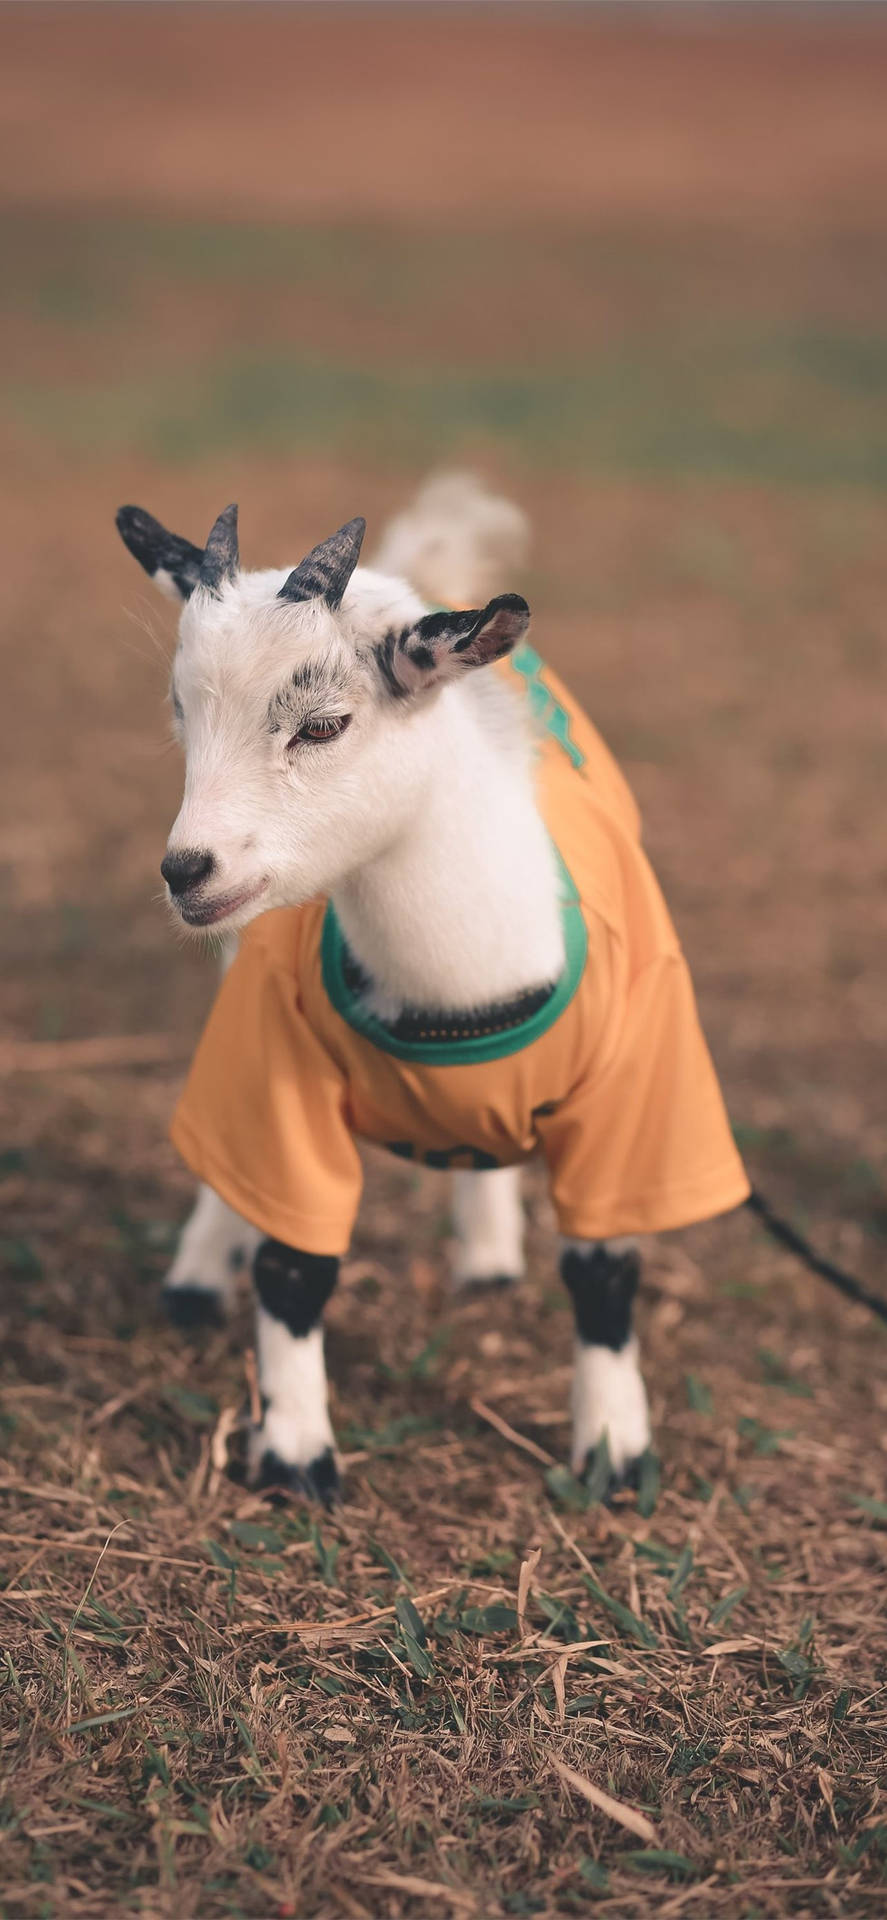 Baby Goat Wearing A Shirt Wallpaper